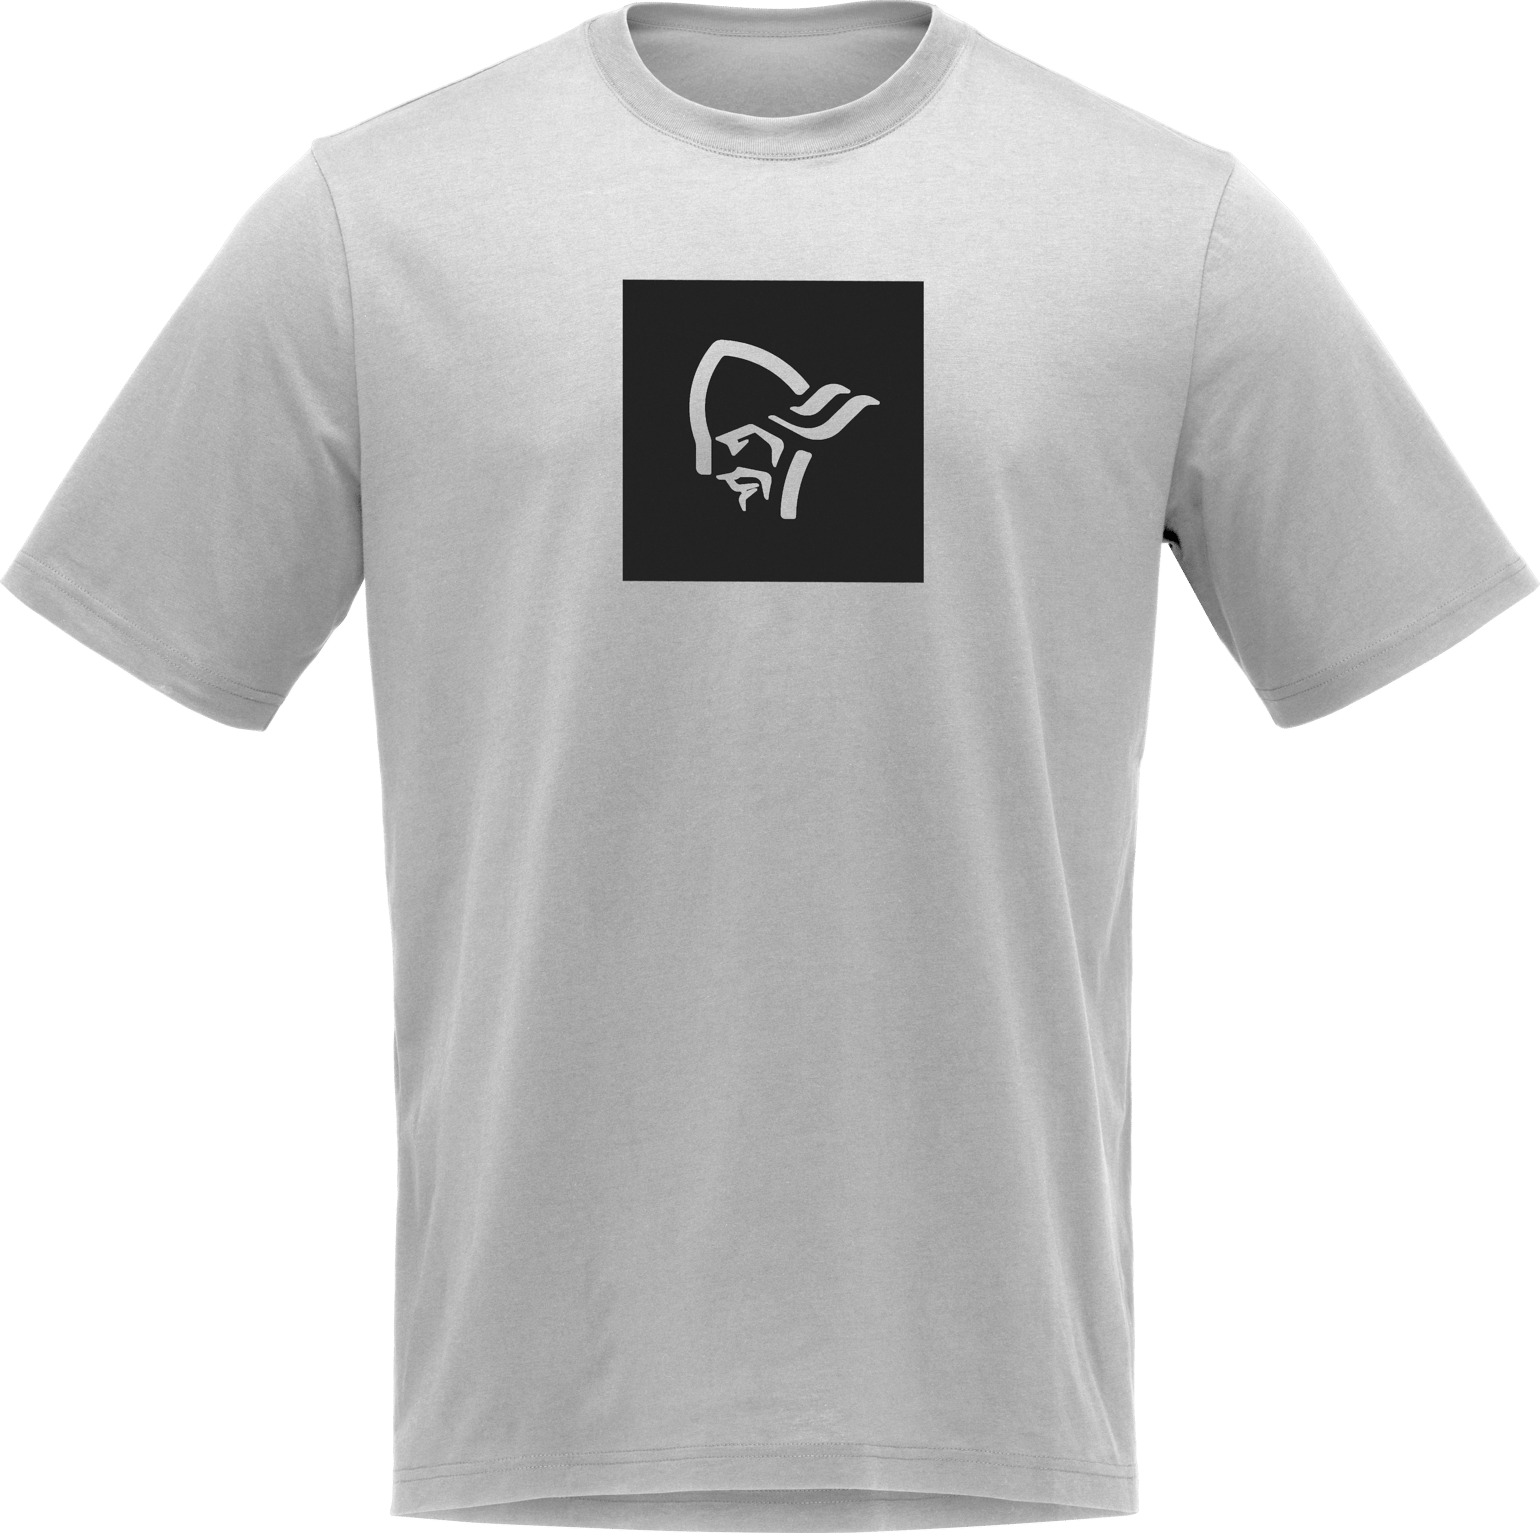 Norrøna Men's /29 Cotton Square Viking T-Shirt Drizzle Melange